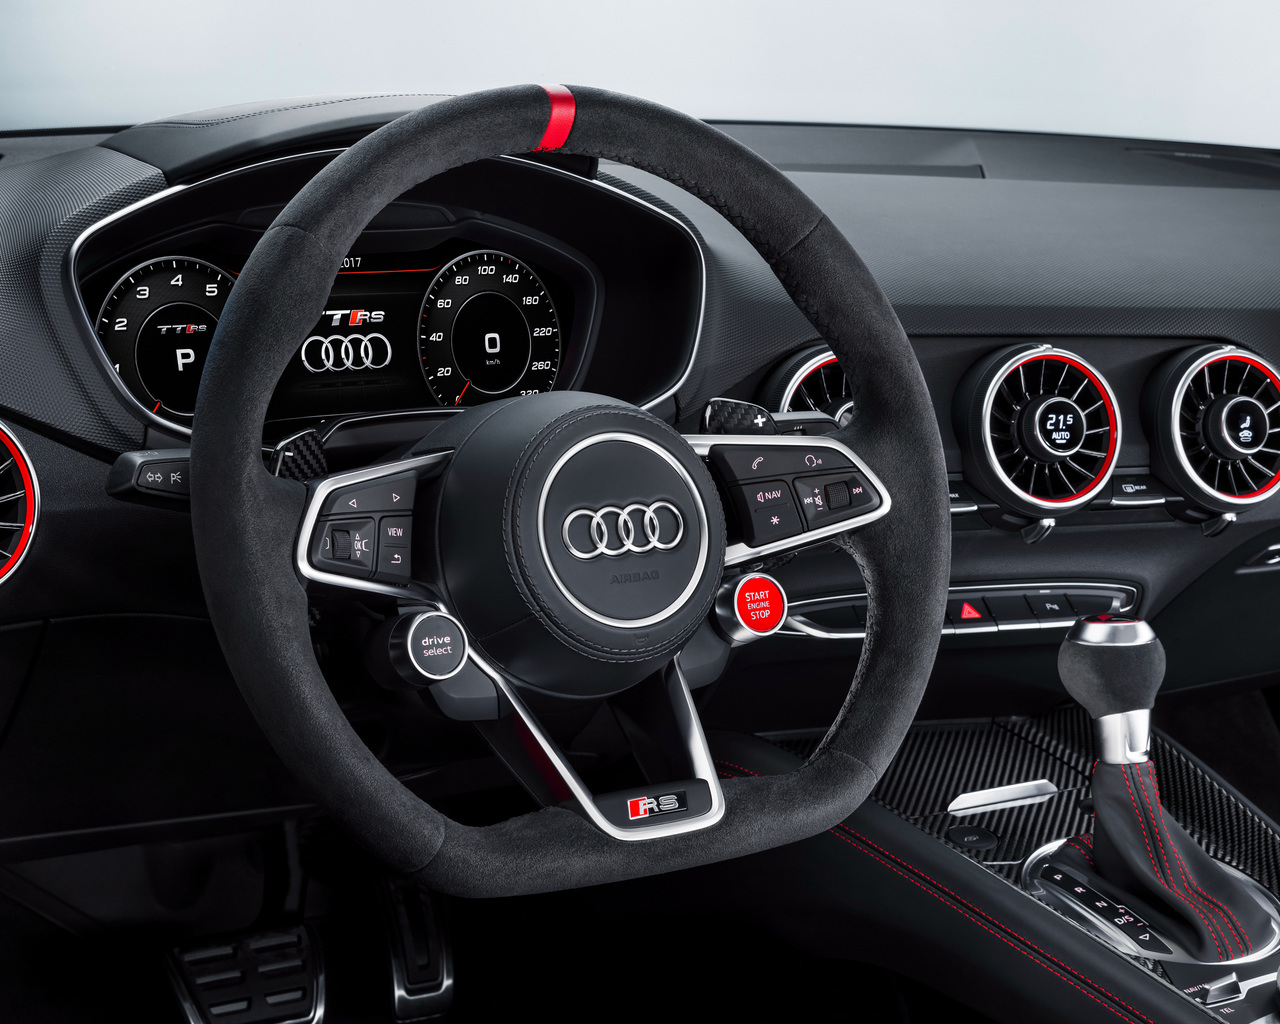 Audi Tt Rs 2017 Interior Qs - Audi Tt 2017 Interior , HD Wallpaper & Backgrounds